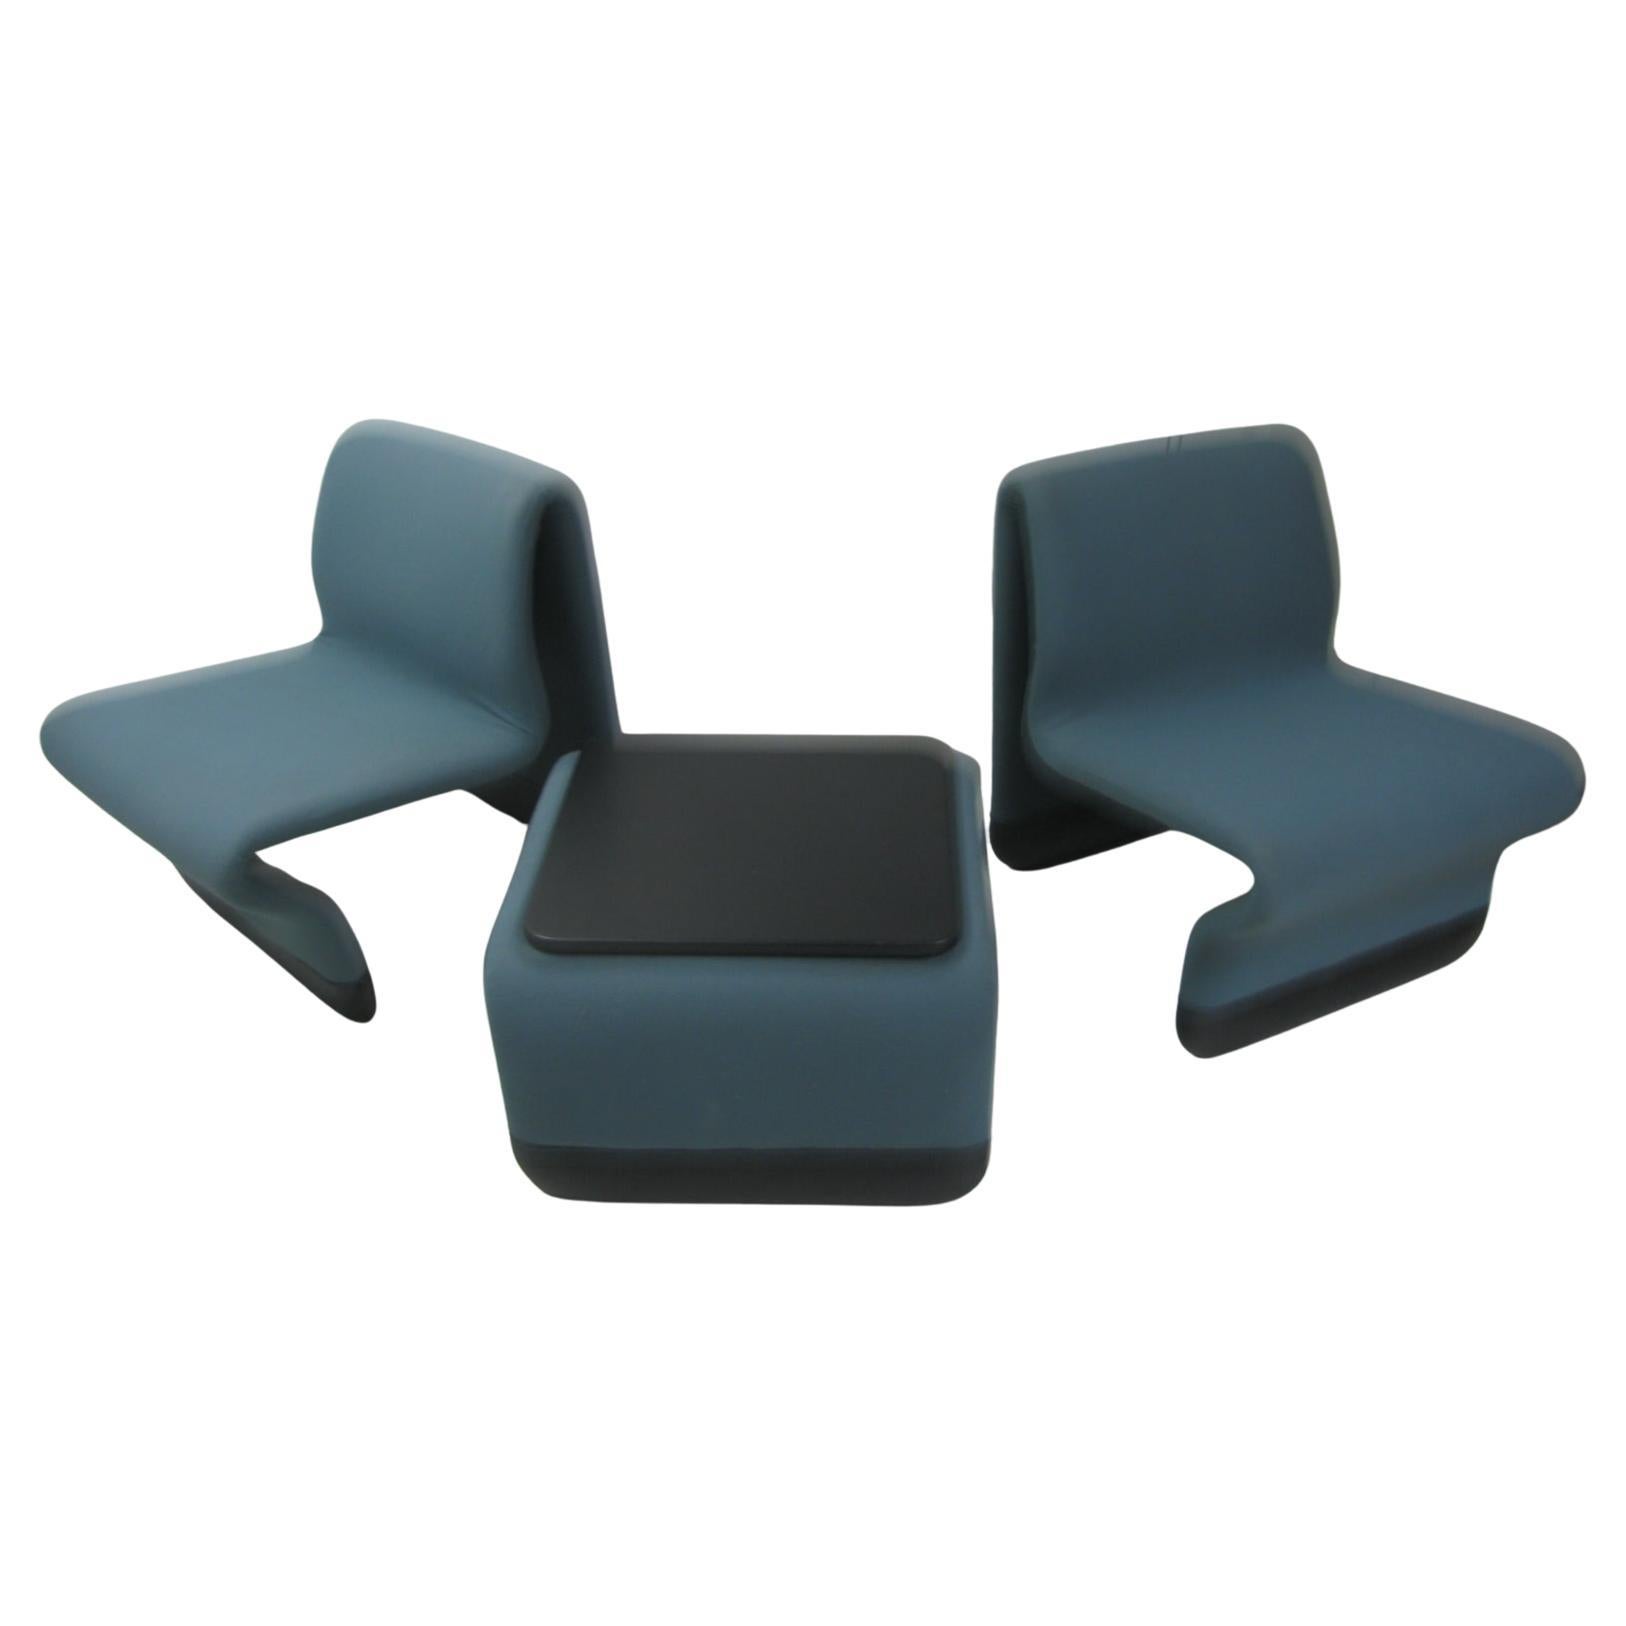 Rare et fabuleux ensemble de trois pièces qui se compose de deux chaises avec une table basse. Le tissu est un tweed bleu-vert avec un vinyle noir Naugahyde autour de la base des chaises et du dessus de la table. Le tissu présente une certaine